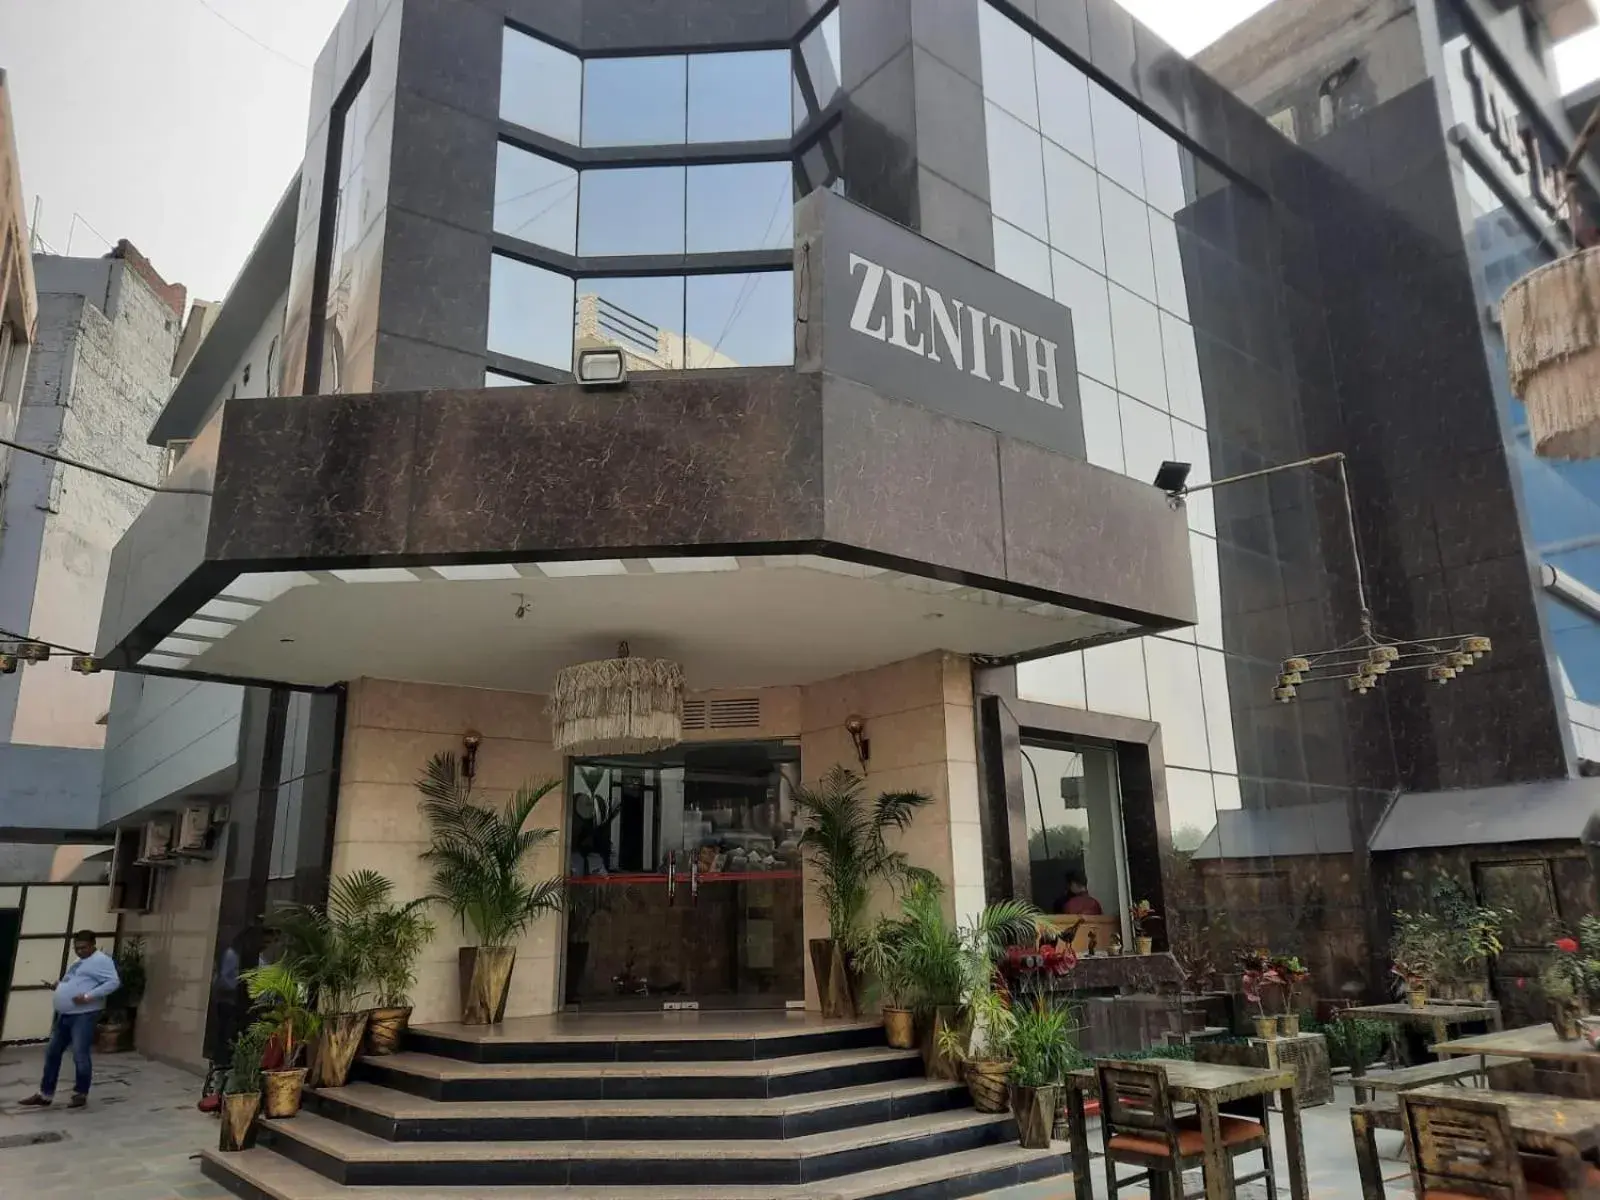 Property building in Zenith Hotel - Delhi Airport